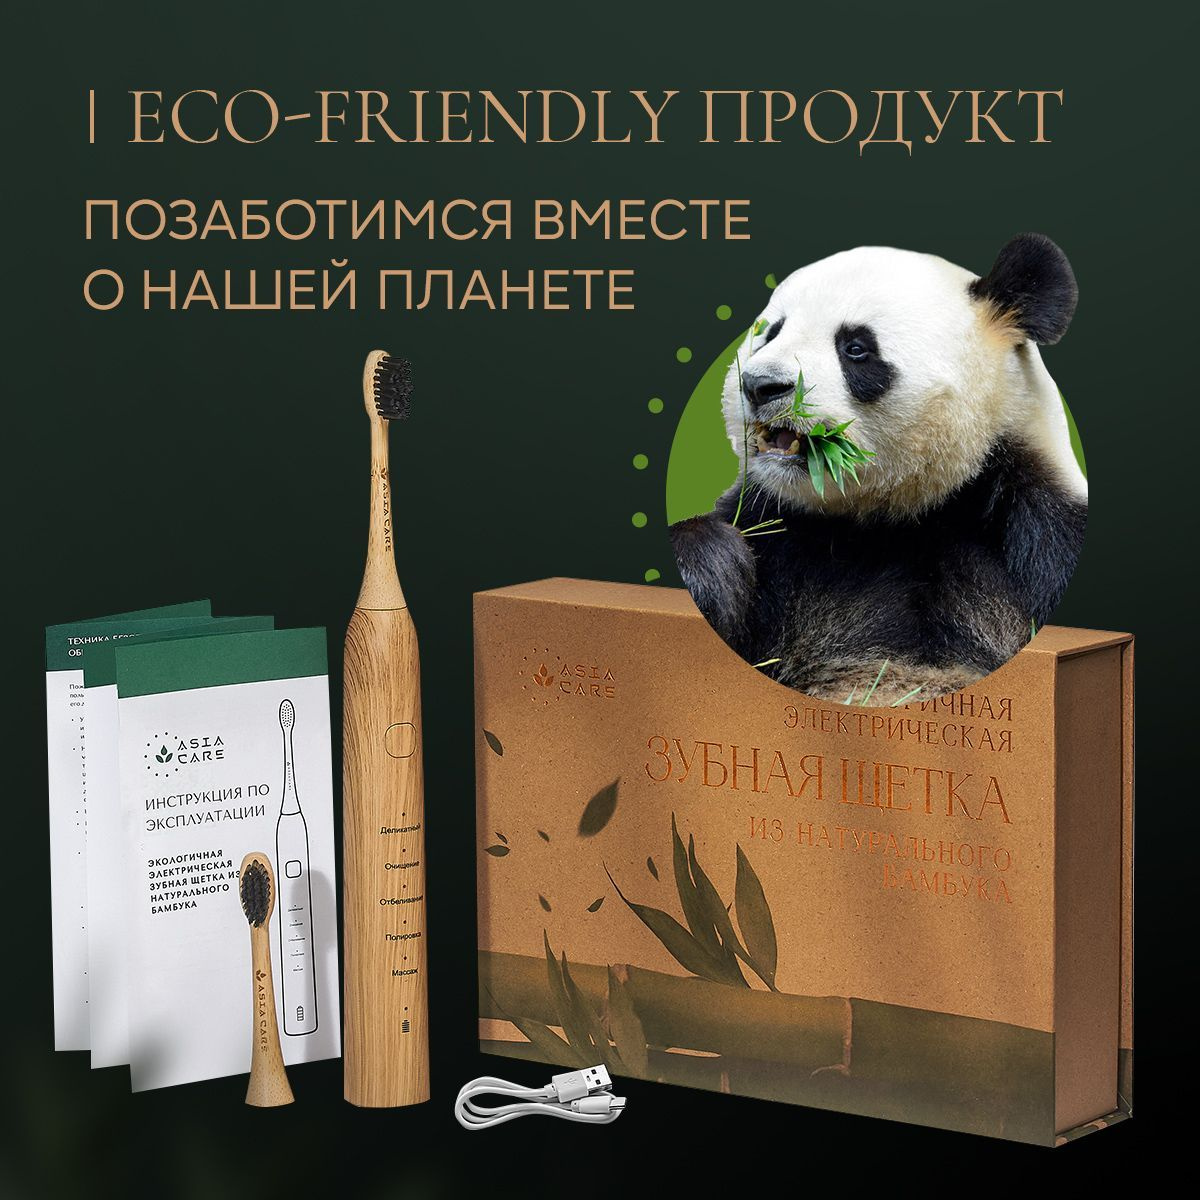 Электрическая зубная щетка из натурального бамбука AsiaCare – это уникальный ЭКО продукт, который сочетает в себе: передовые технологии, стильный дизайн и заботу о человеке и окружающей среде